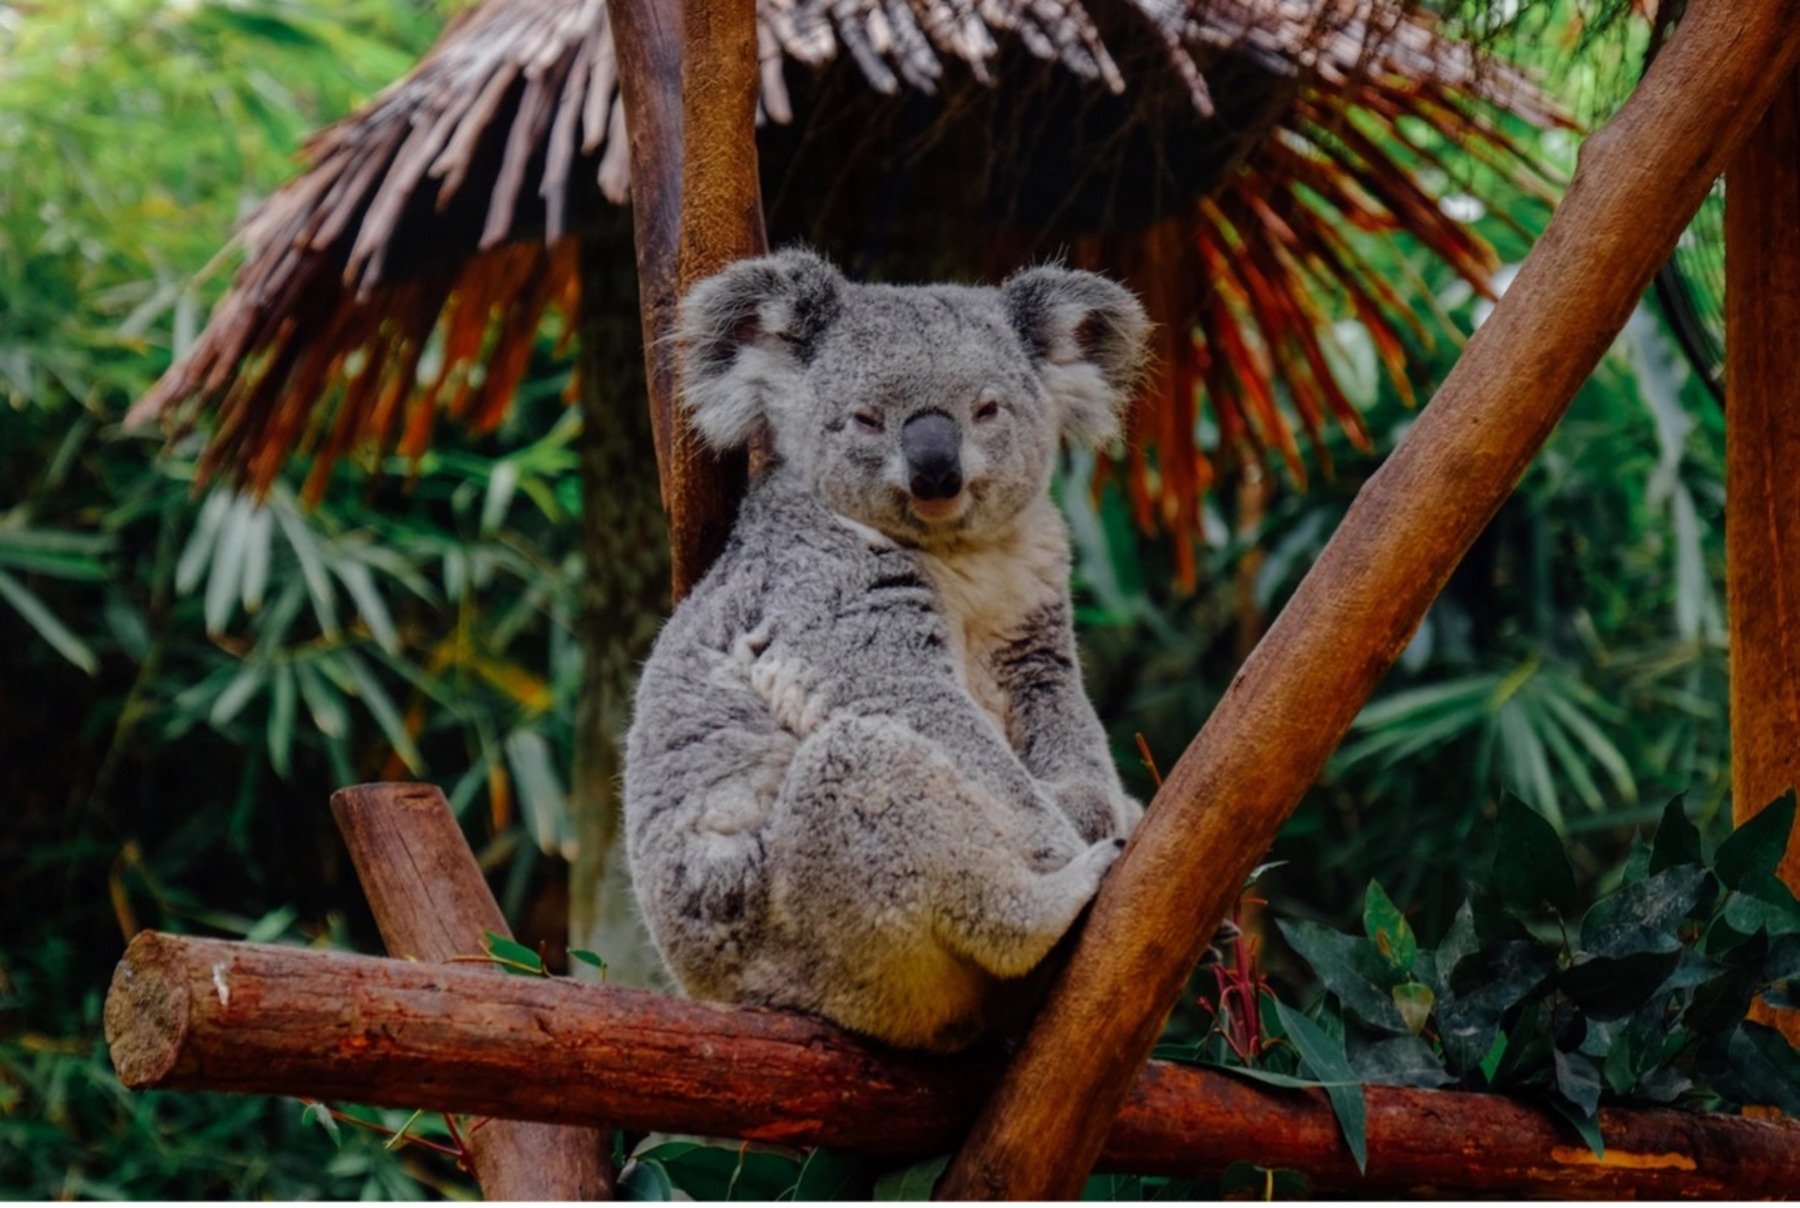 Ein Koala sitzt auf einem Baumstamm und schaut frontal in die Kamera.